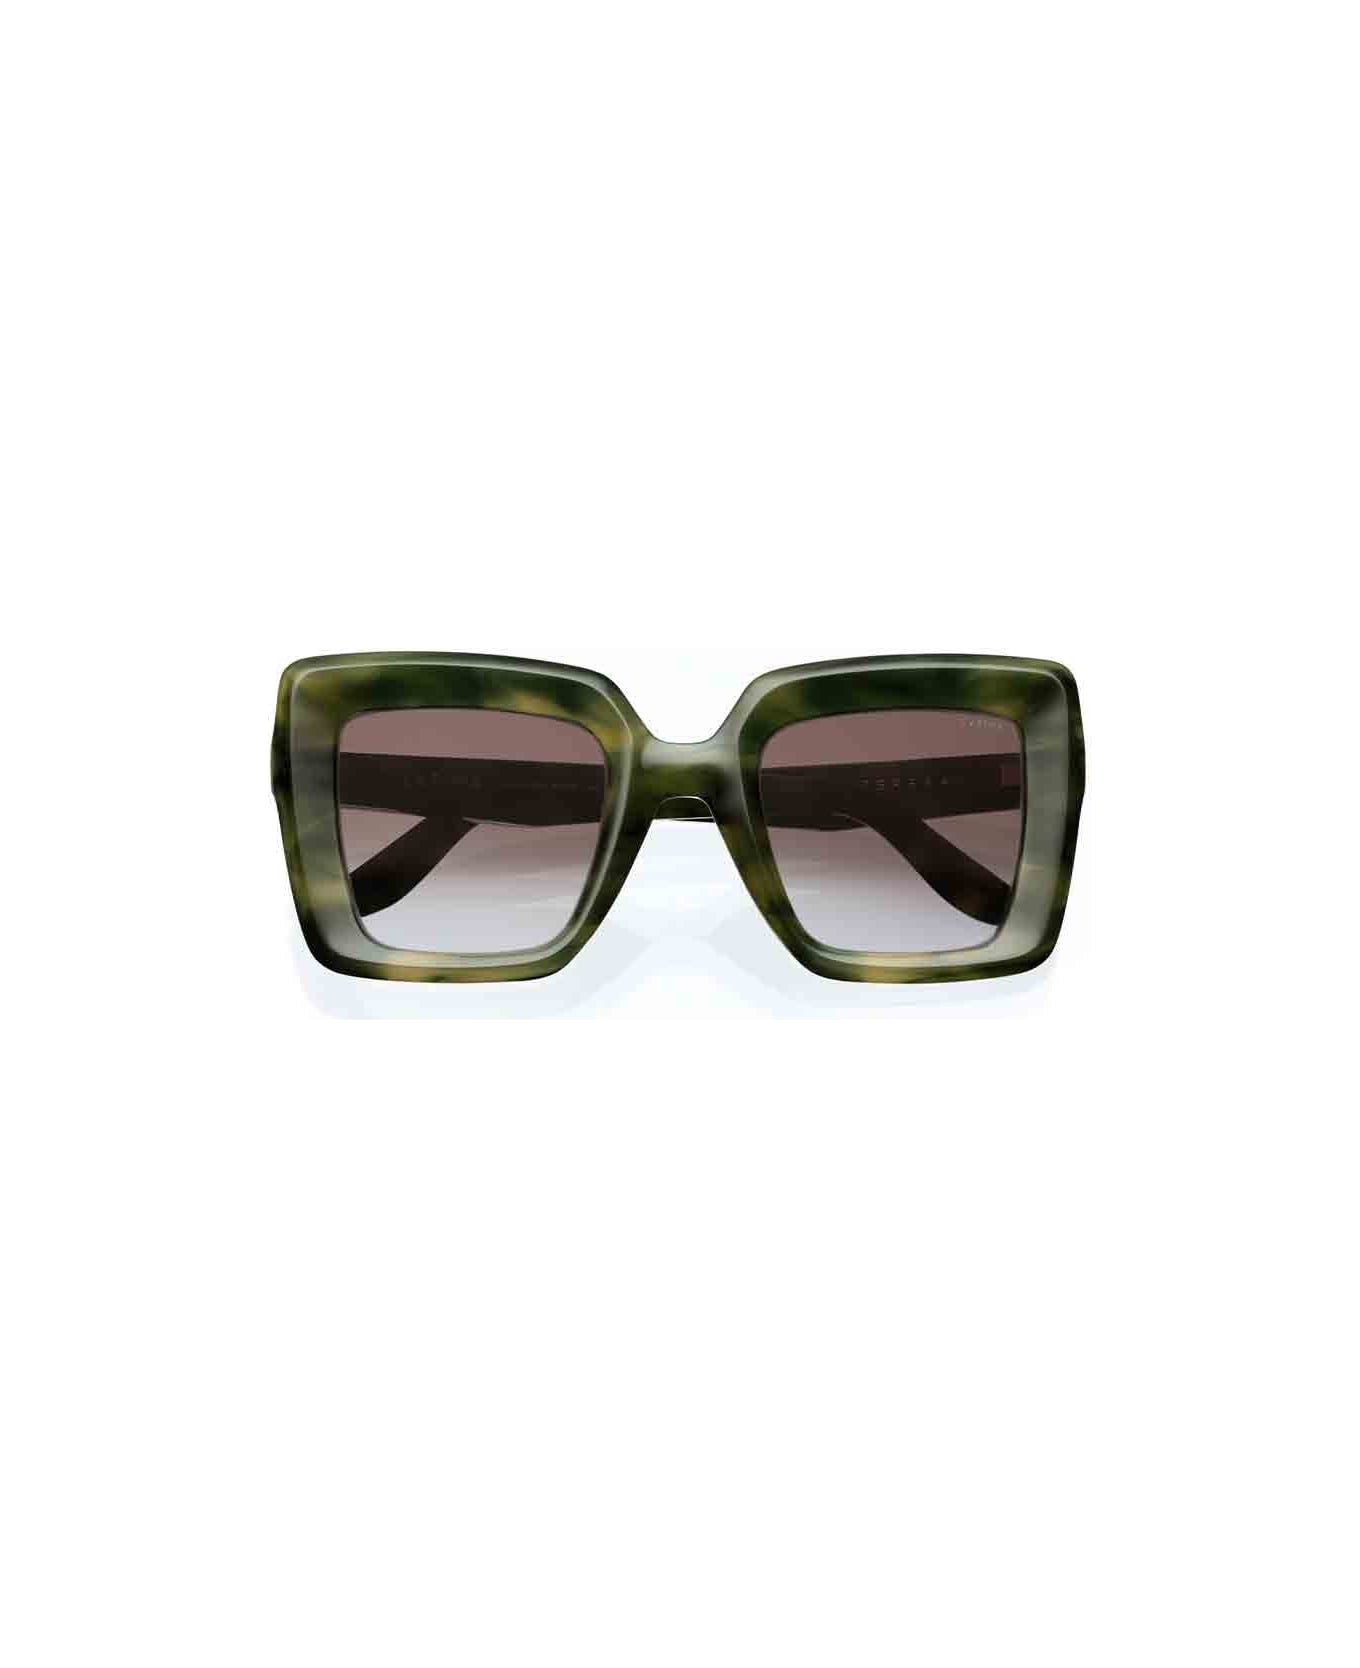 Lapima Eyewear - Verde/Ambra アイウェア